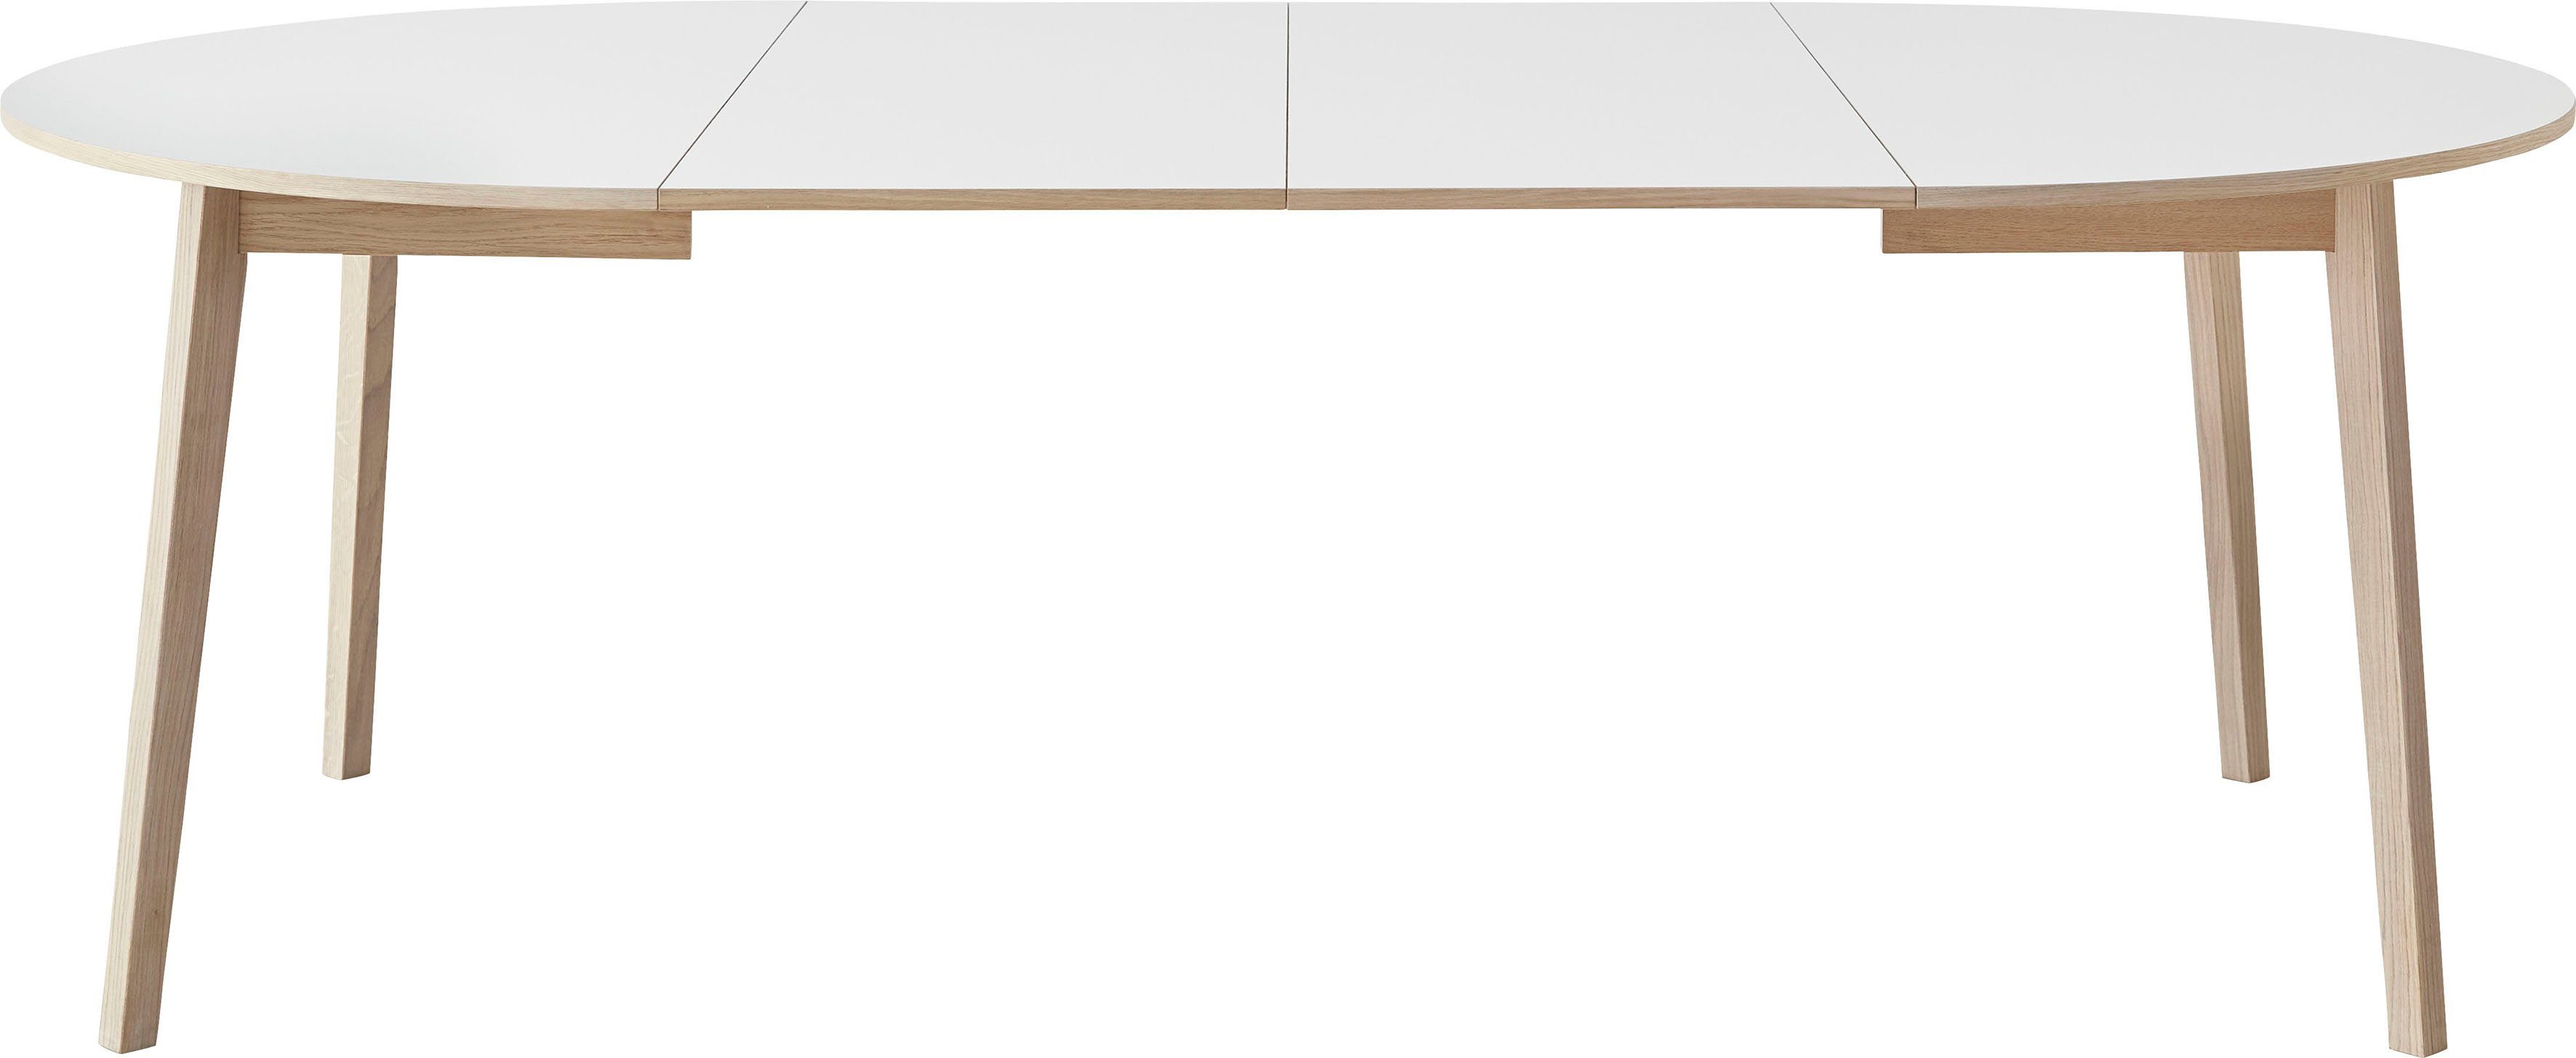 Hammel Furniture Esstisch Basic by aus 2 inklusive Einlegeplatten Weiß/Naturfarben Ø130/228 cm, Hammel Single, Gestell Massivholz